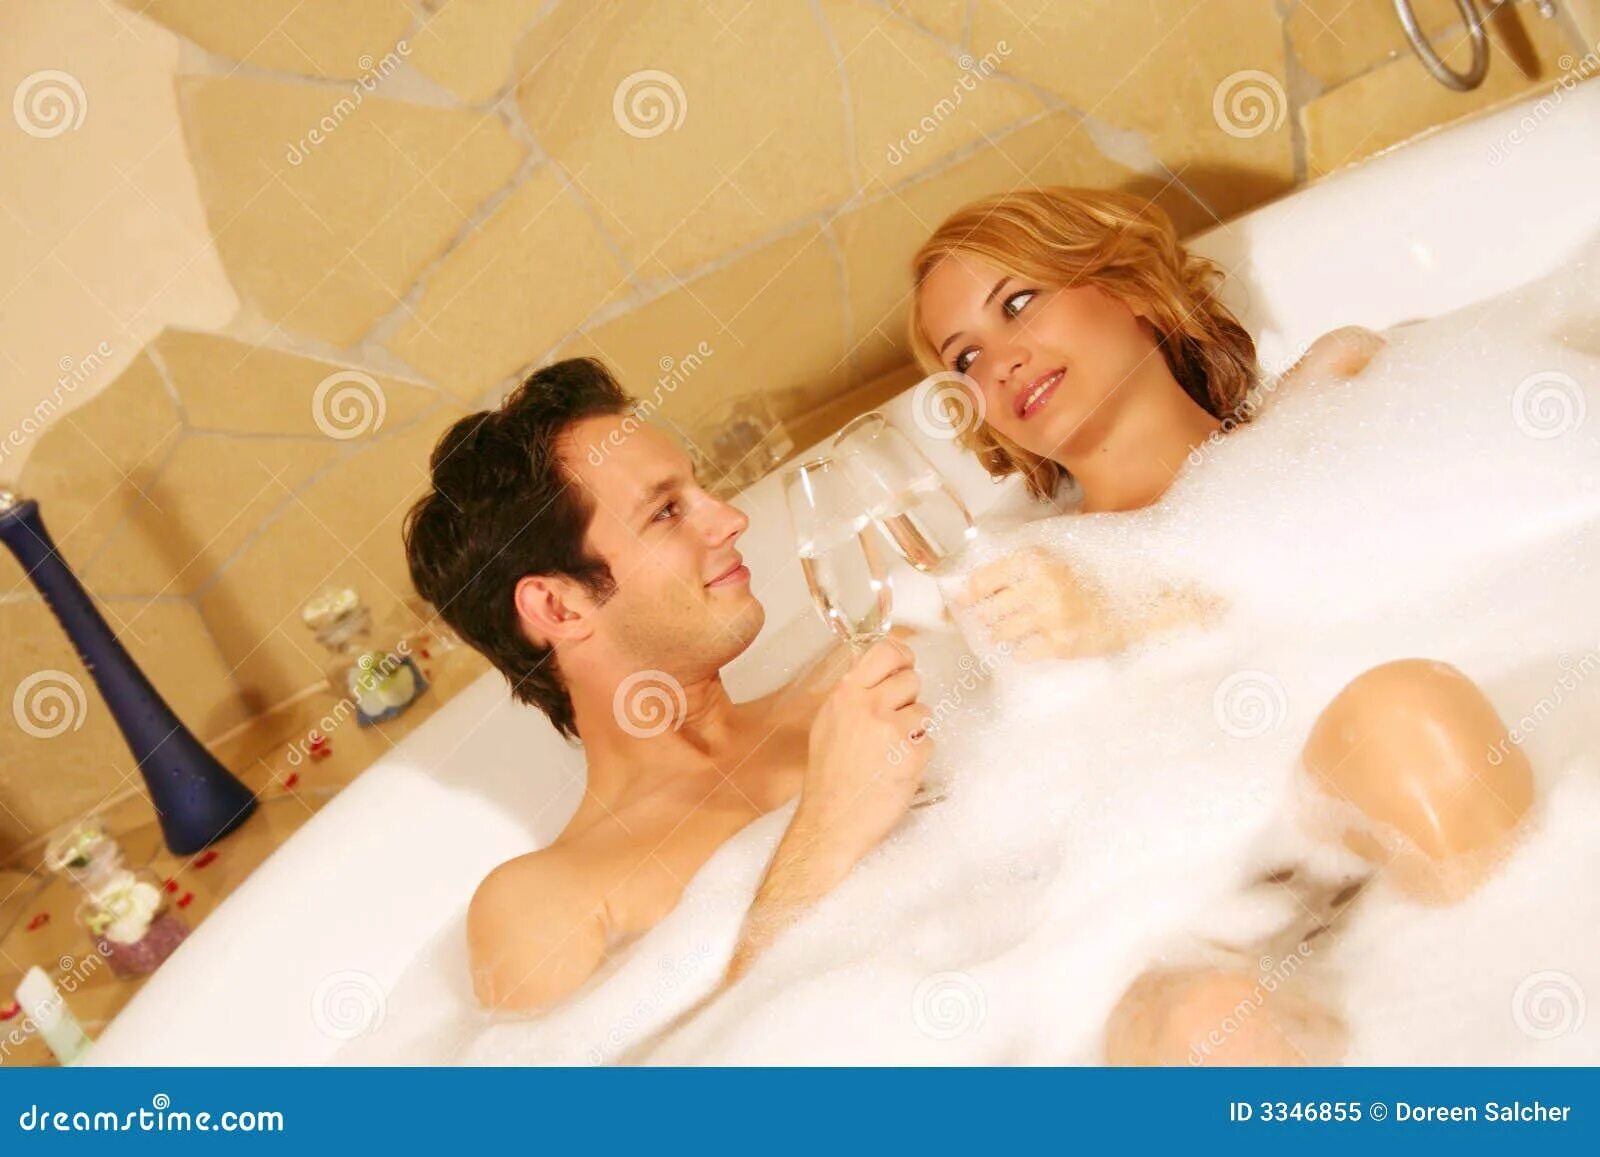 Семейные пары в ванной. Подростковая пара в ванной. Супружеская пара в ванной. Молодая парочка в ванной.